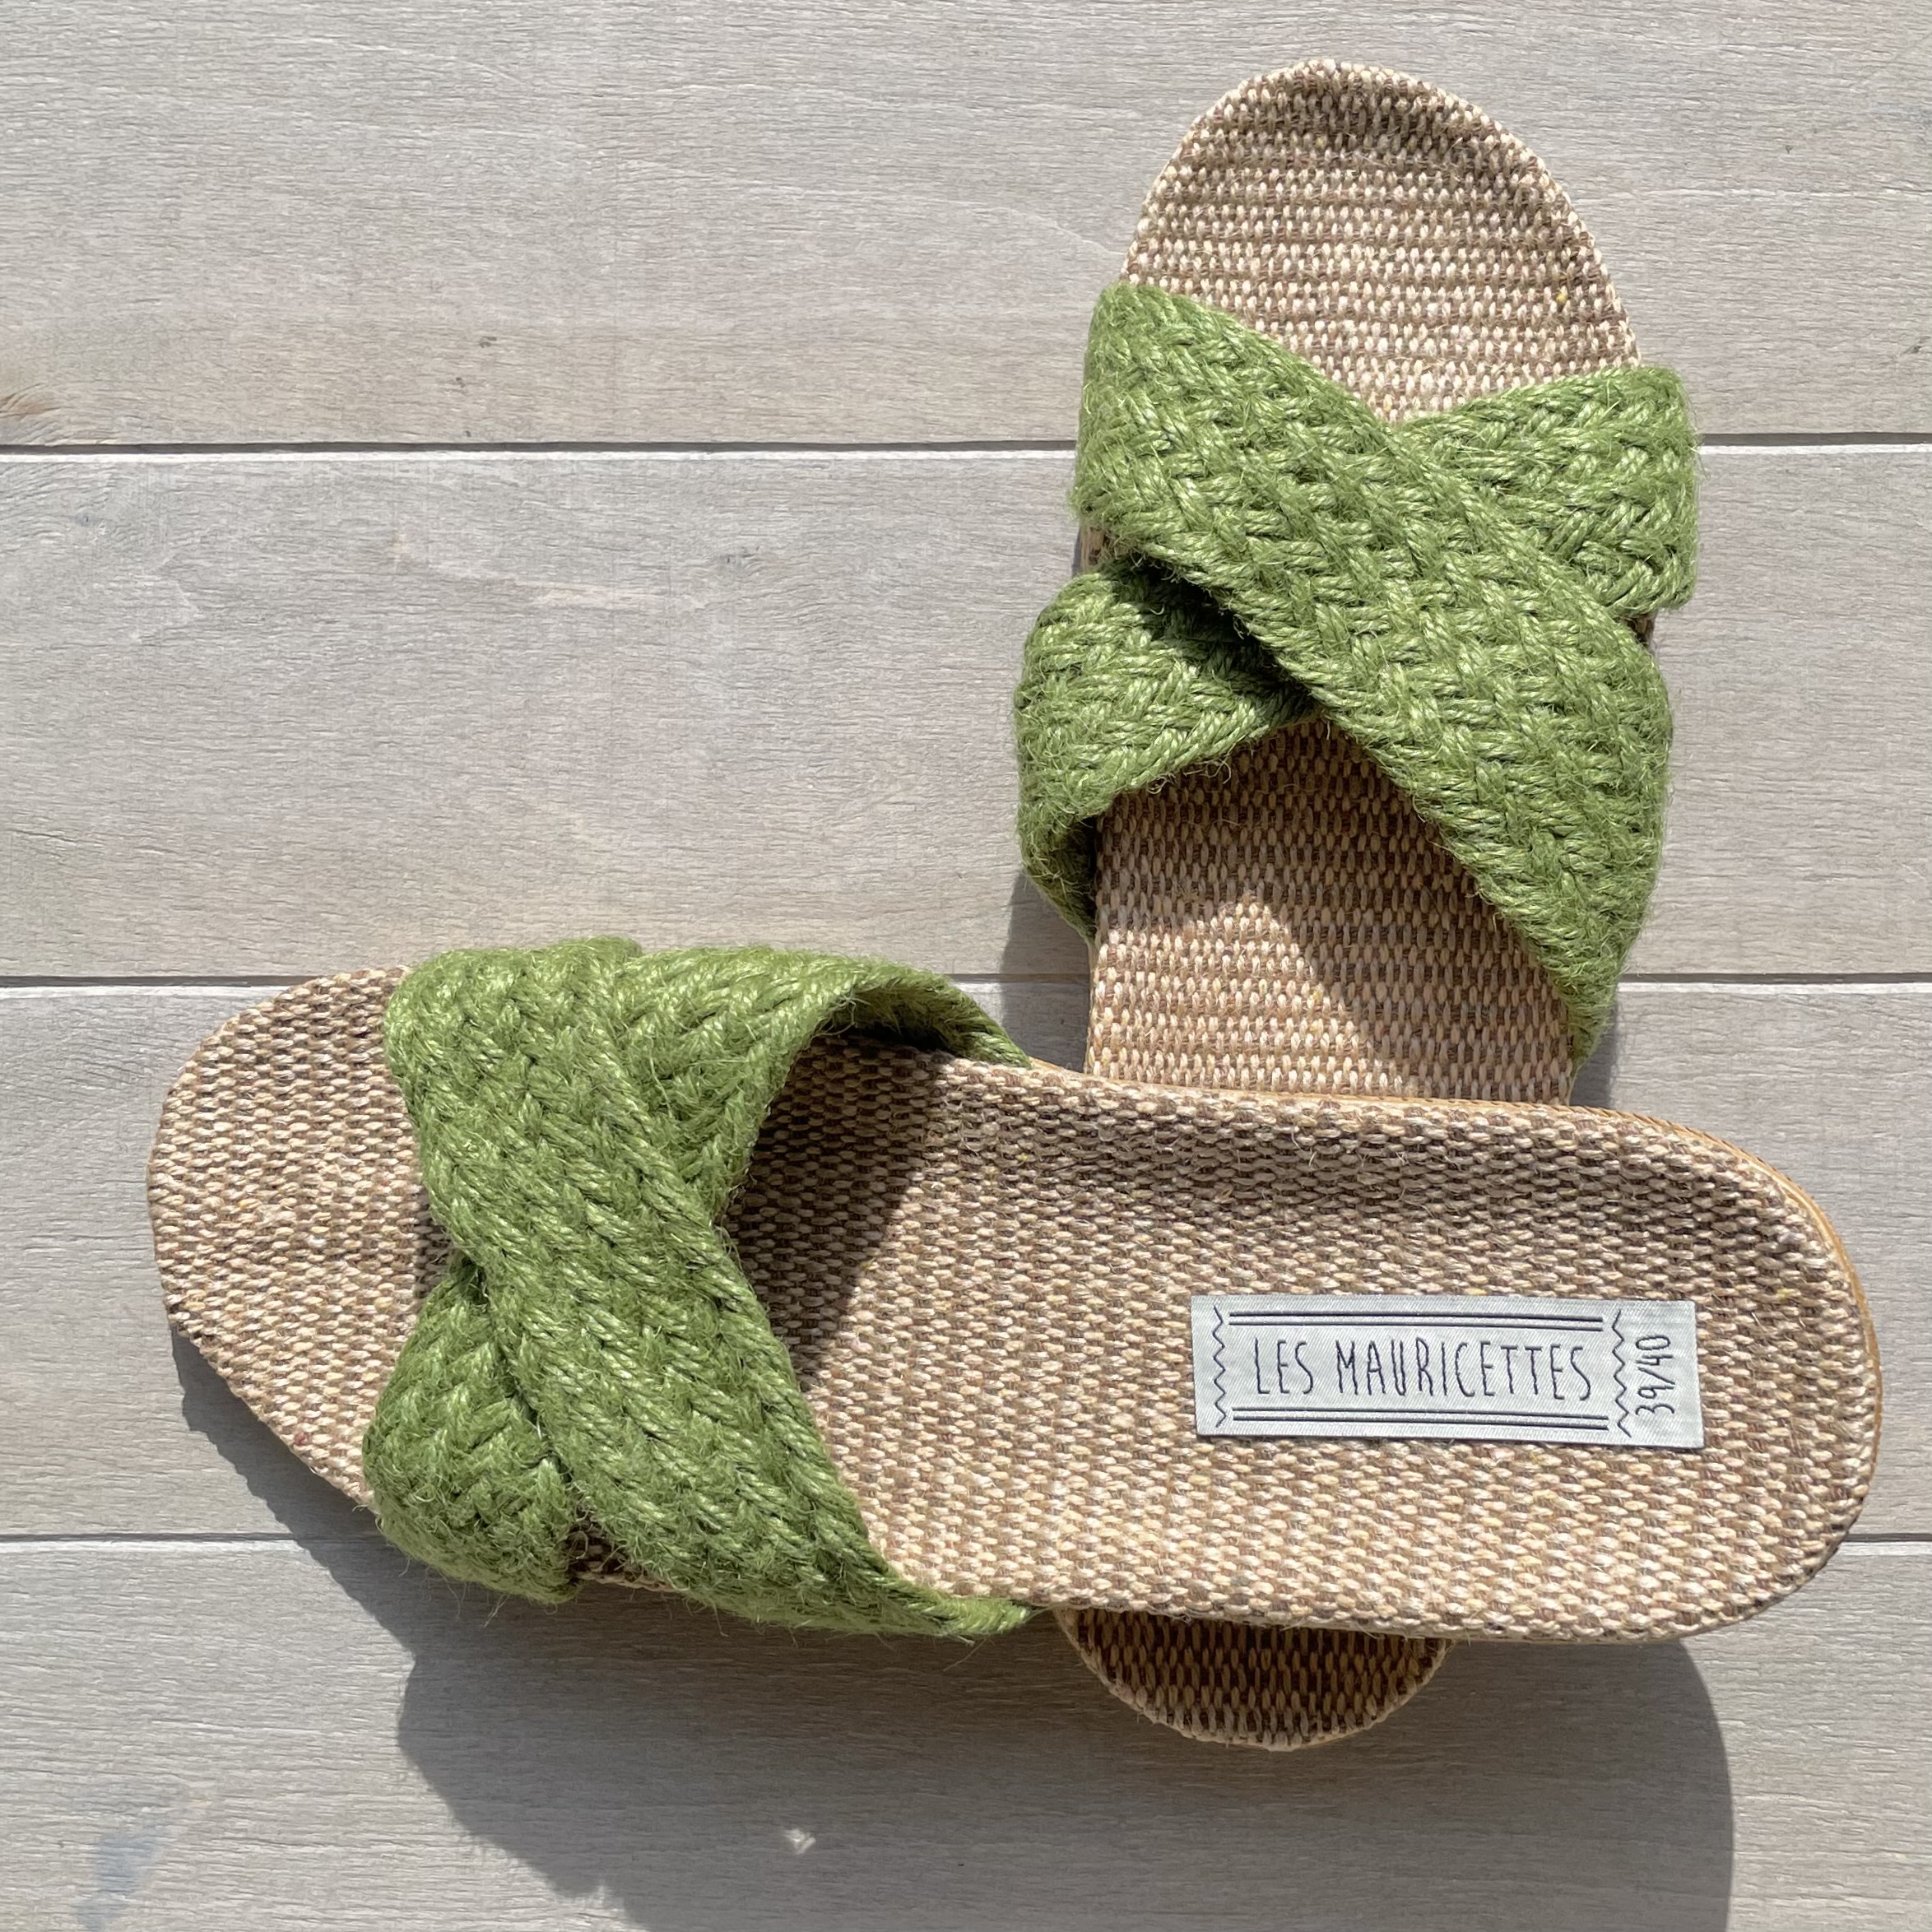 Les Mauricettes de Suzon, sandales en corde vertes légères